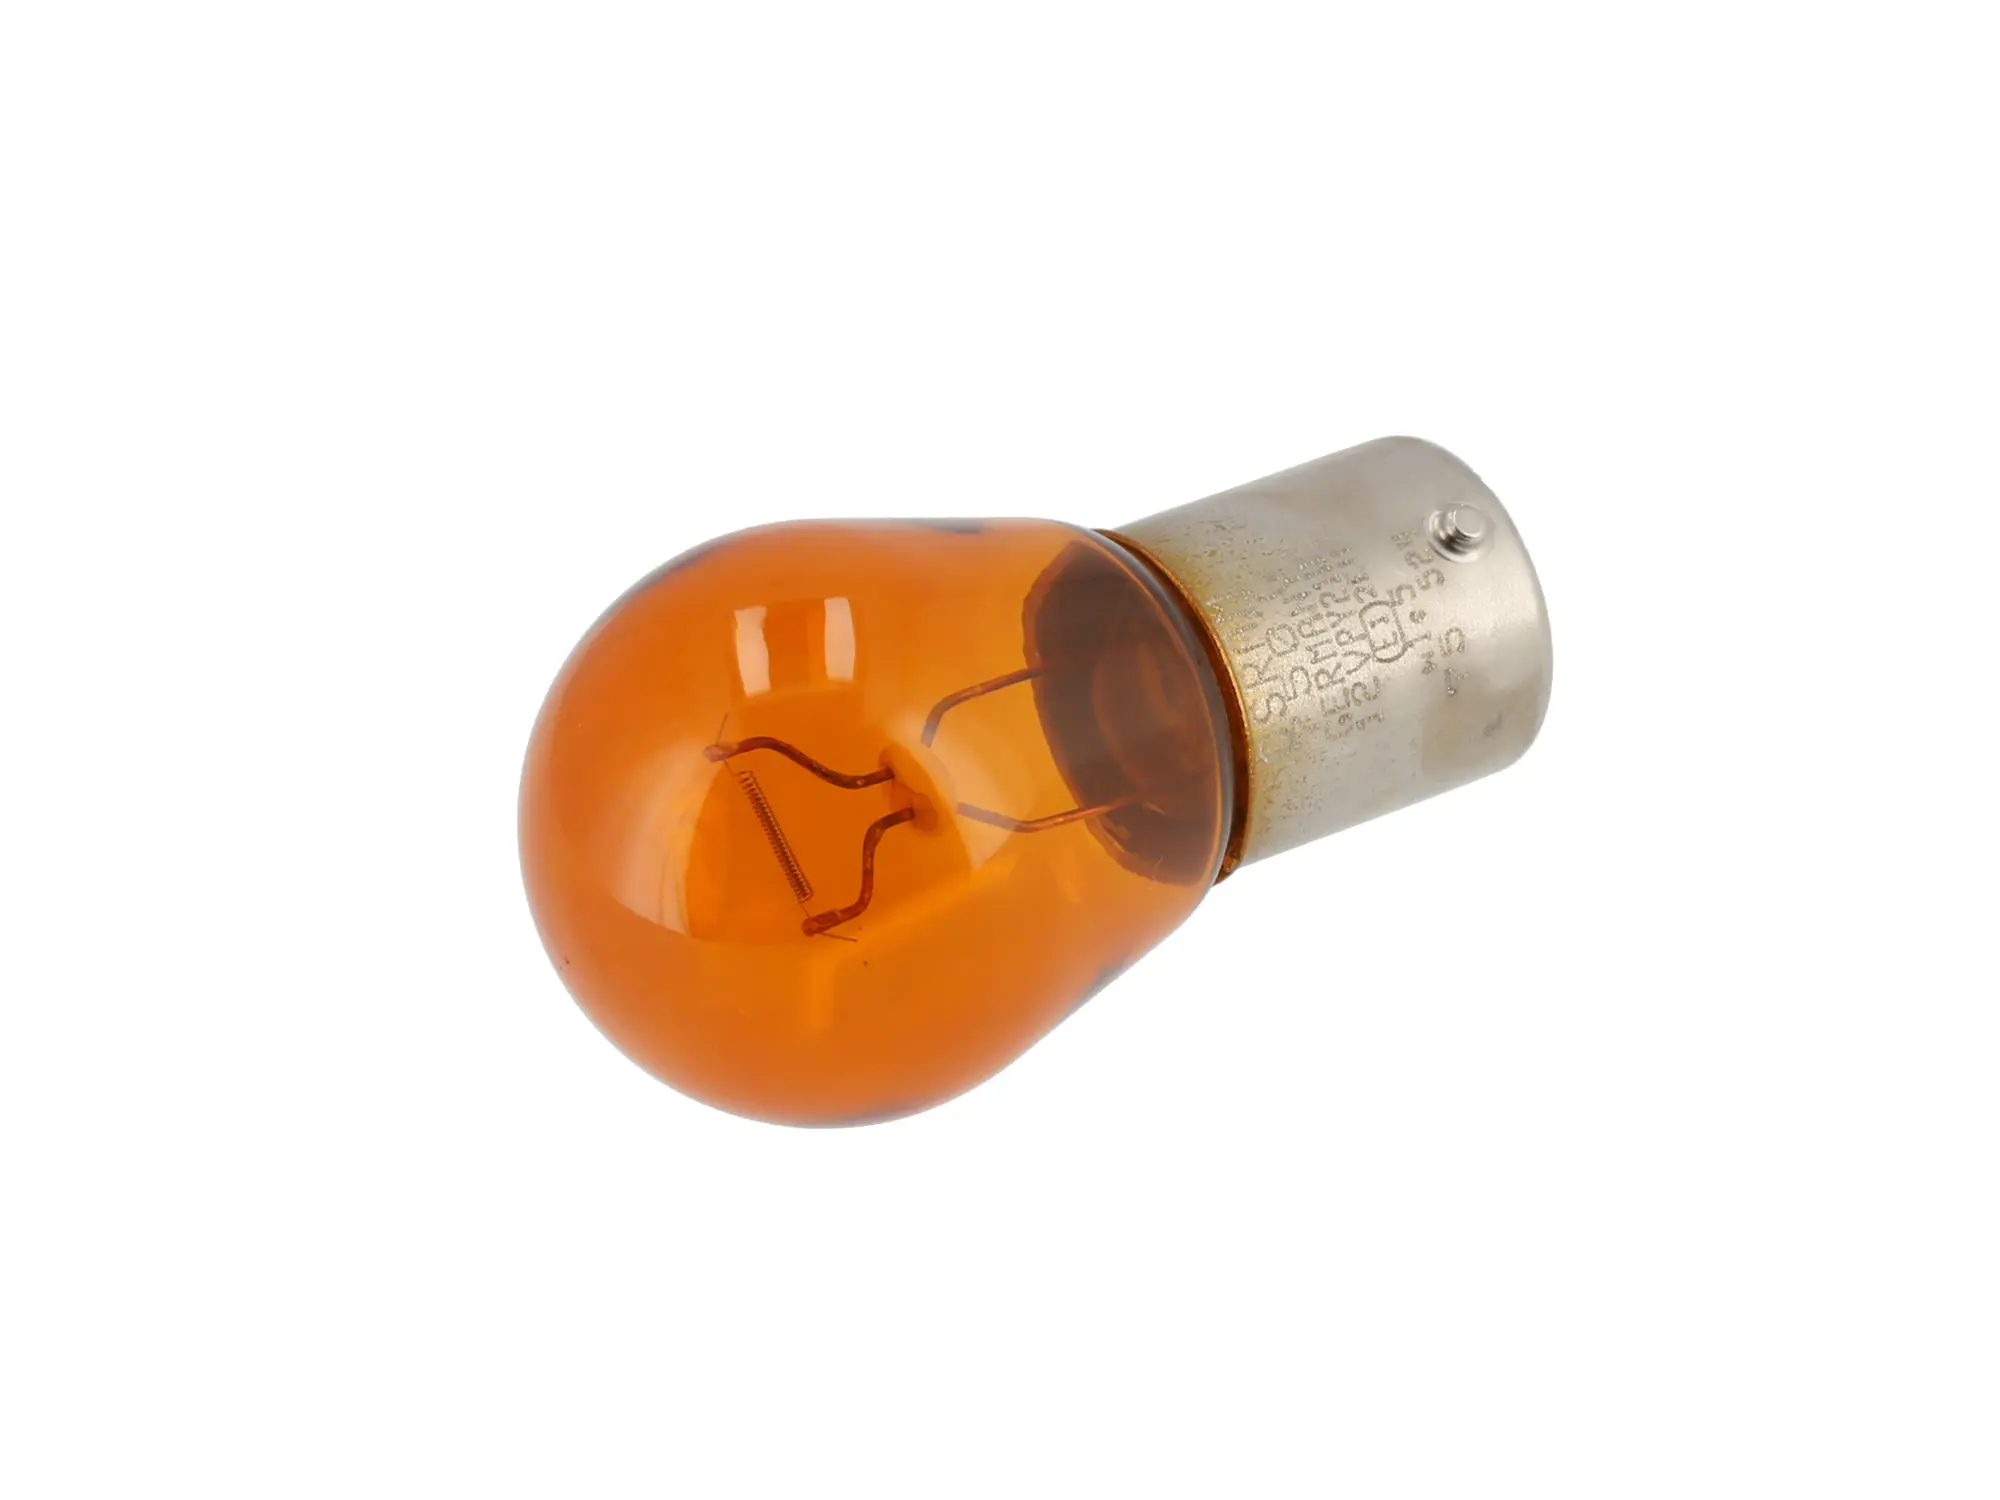 Kugellampe 12V 21W BAU15s orange, von OSRAM, Art.-Nr.: 10071478 - Bild 1